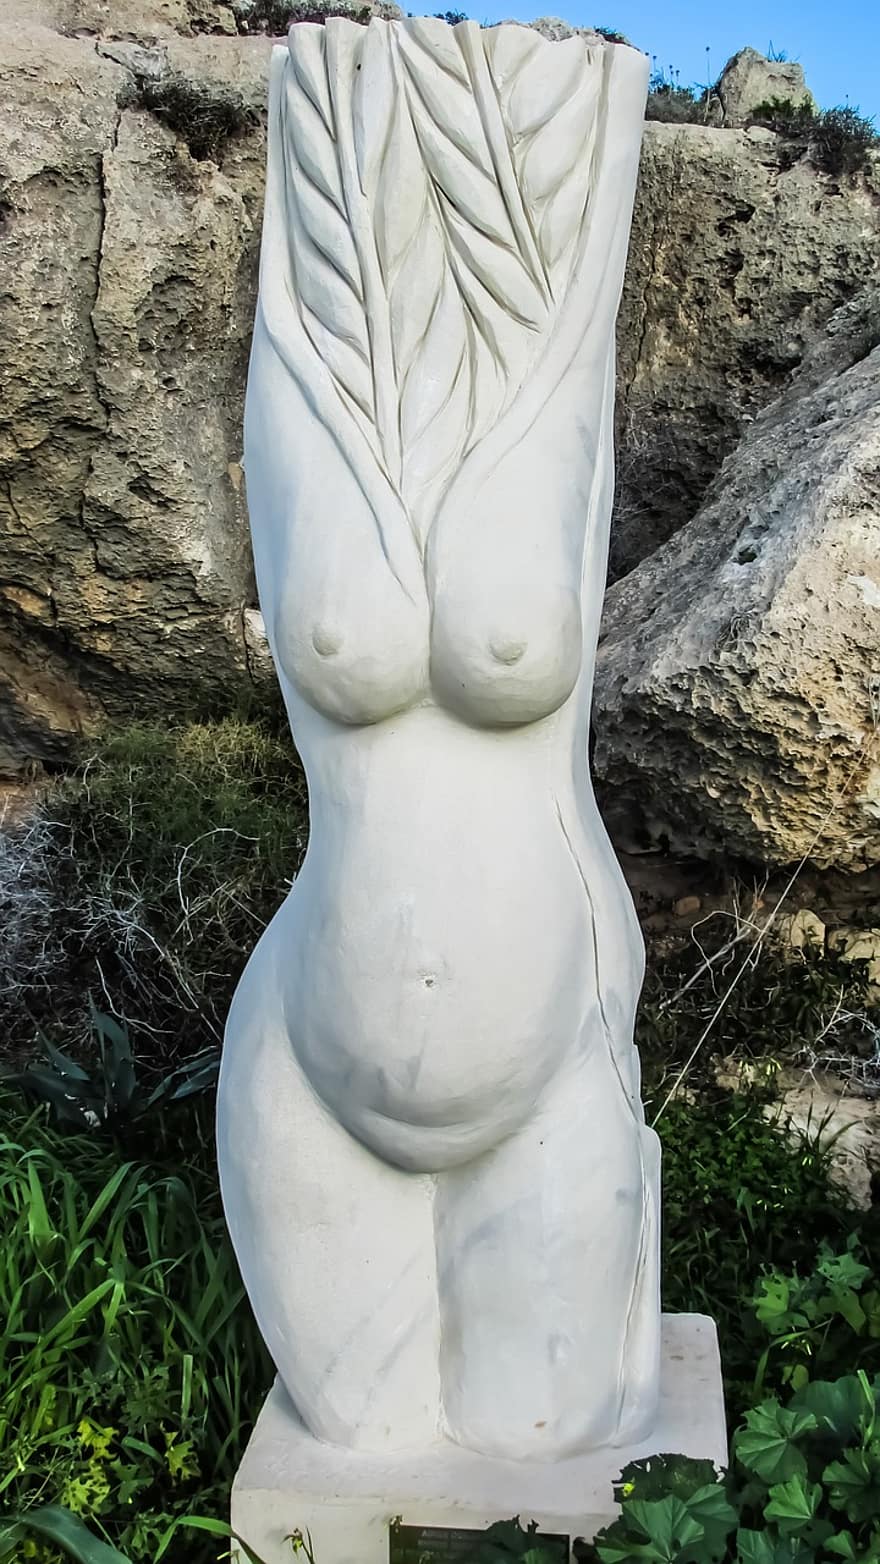 Kypr, ayia napa, park sochařství, plodnost